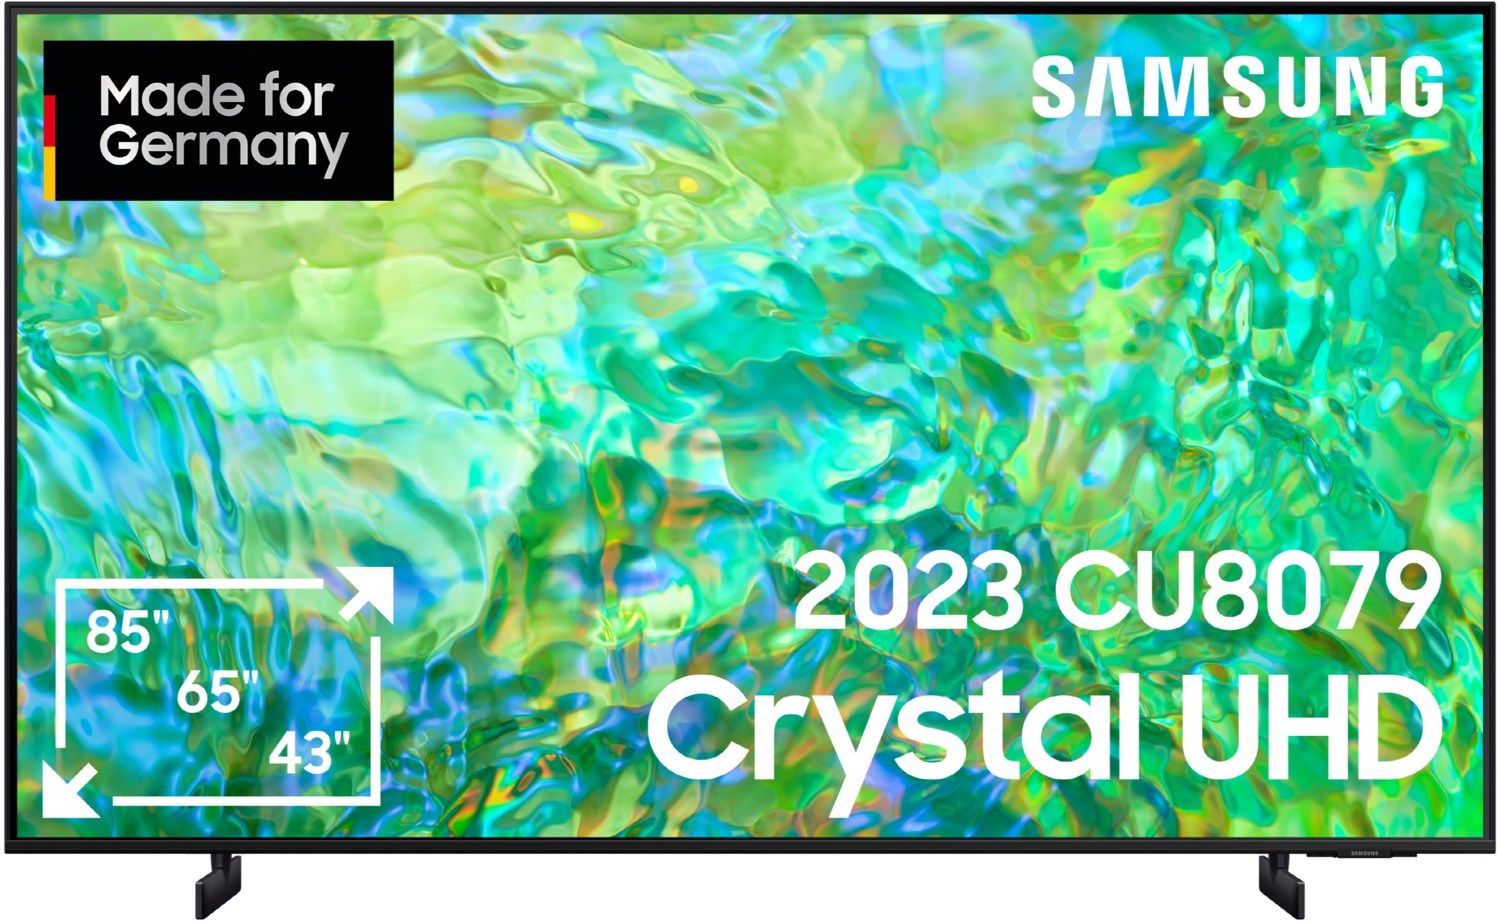 Samsung Chrystal UHD TV 4K 65 Zoll (163 cm) schwarz von Samsung